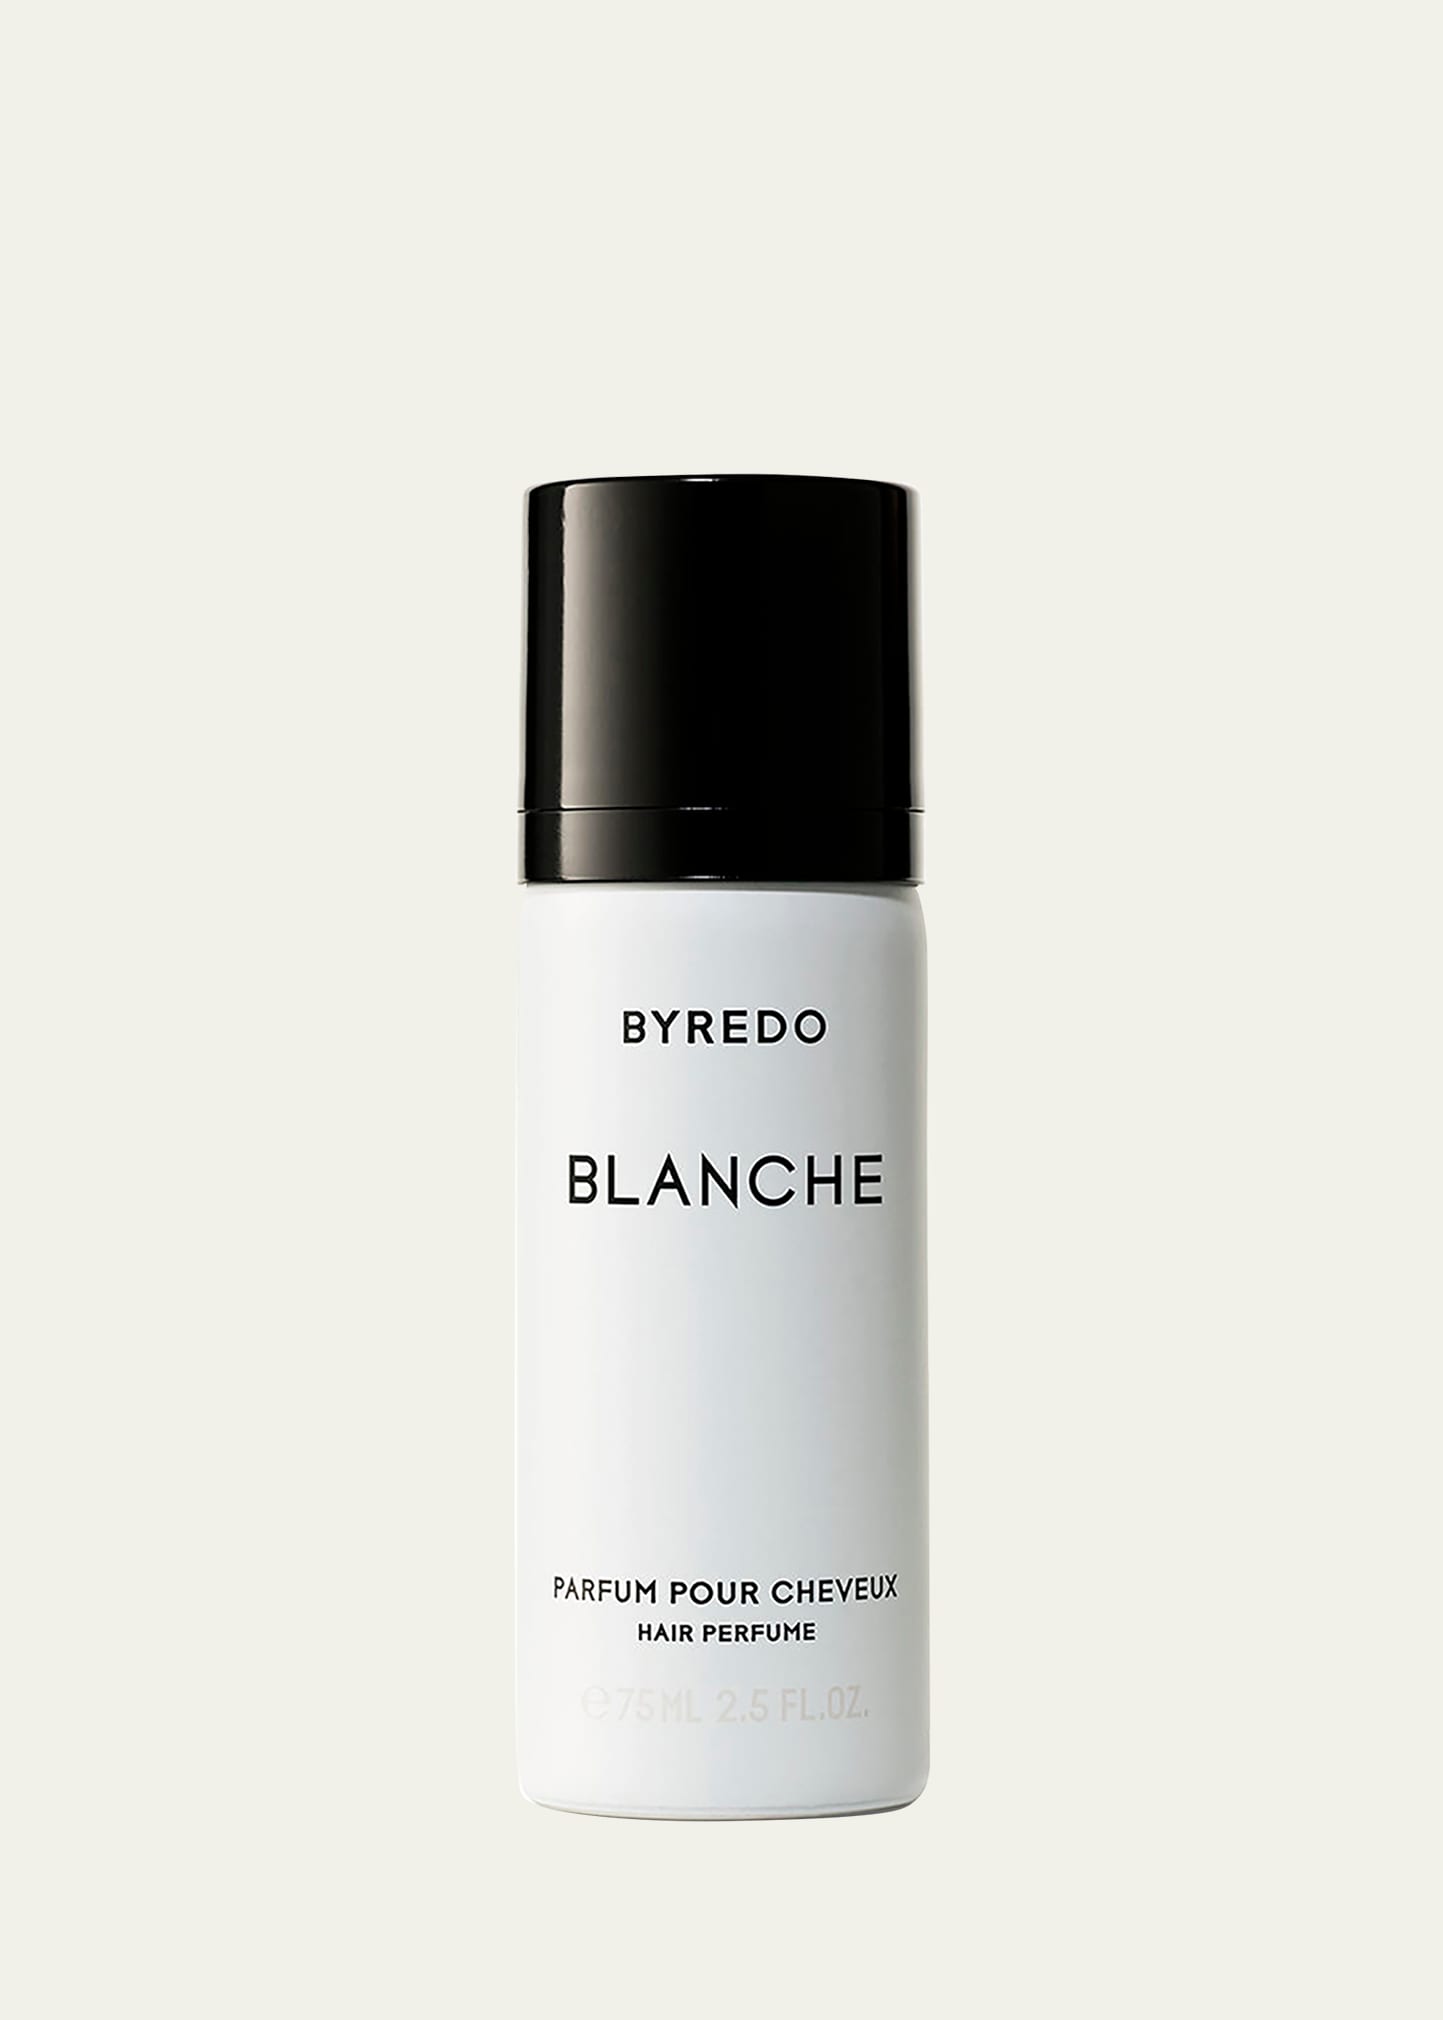 Blanche Hair Perfume, 2.5 oz./ 75 mL